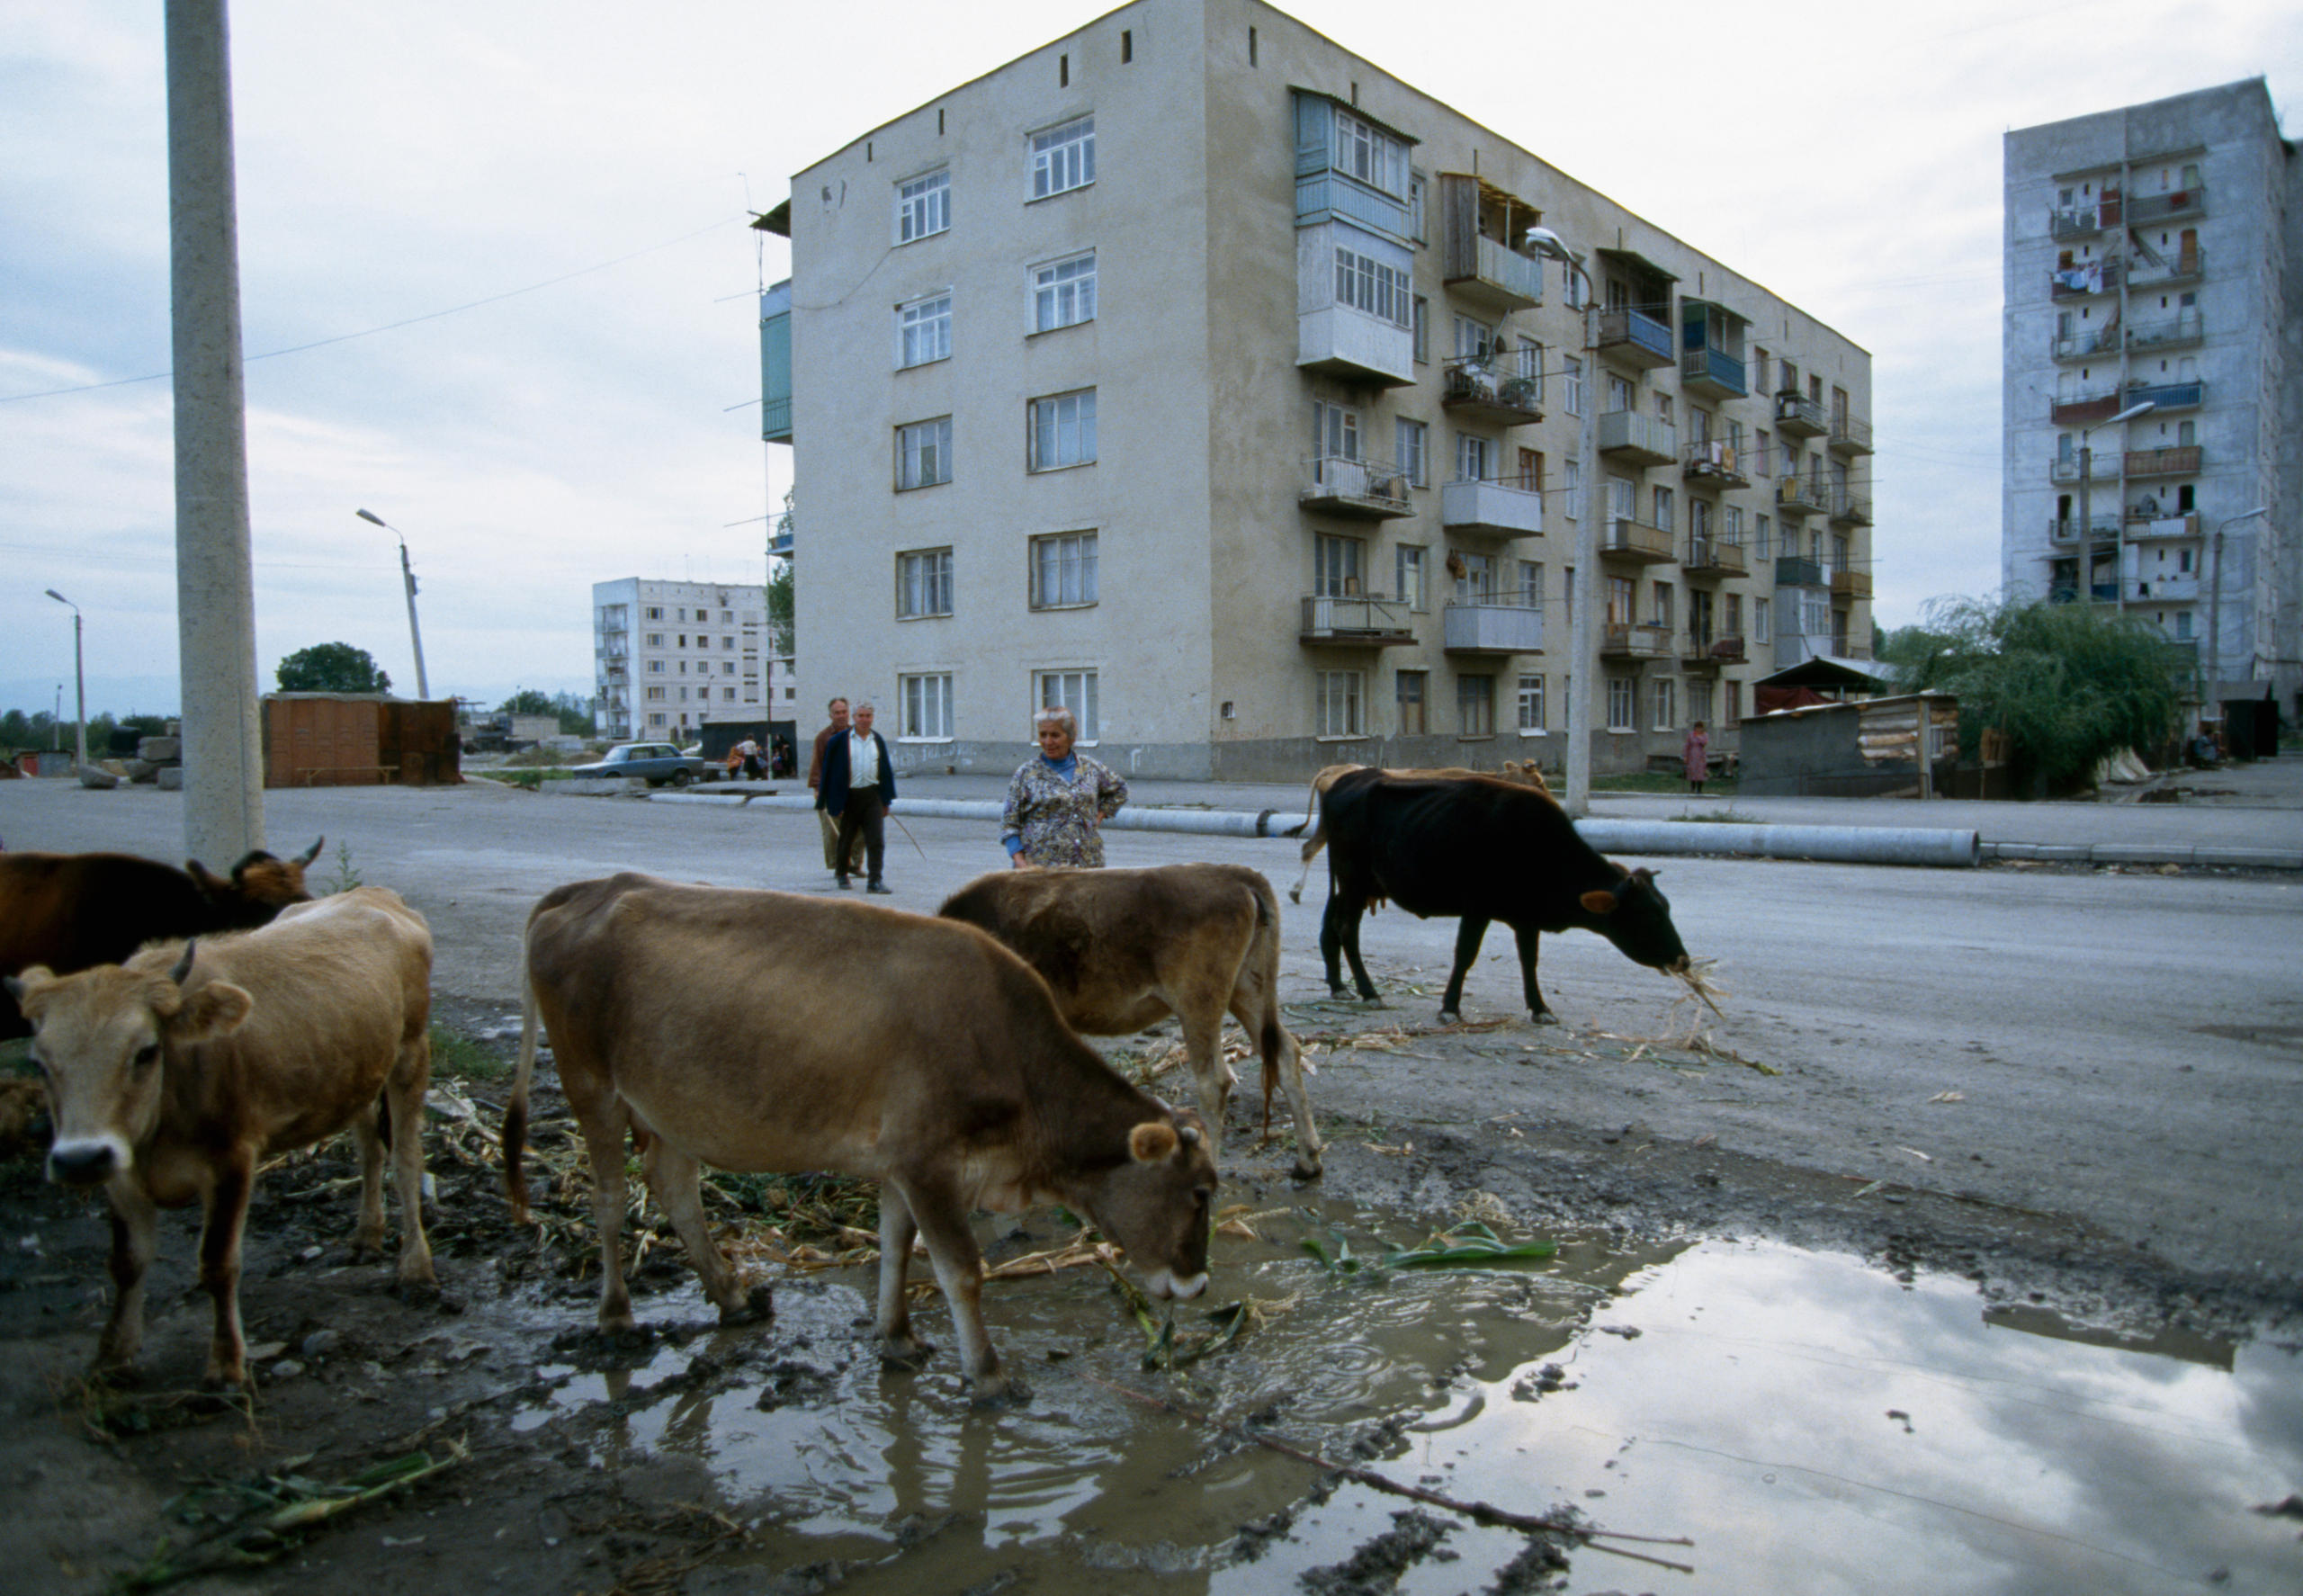 Vaches dans les rues d une ville.